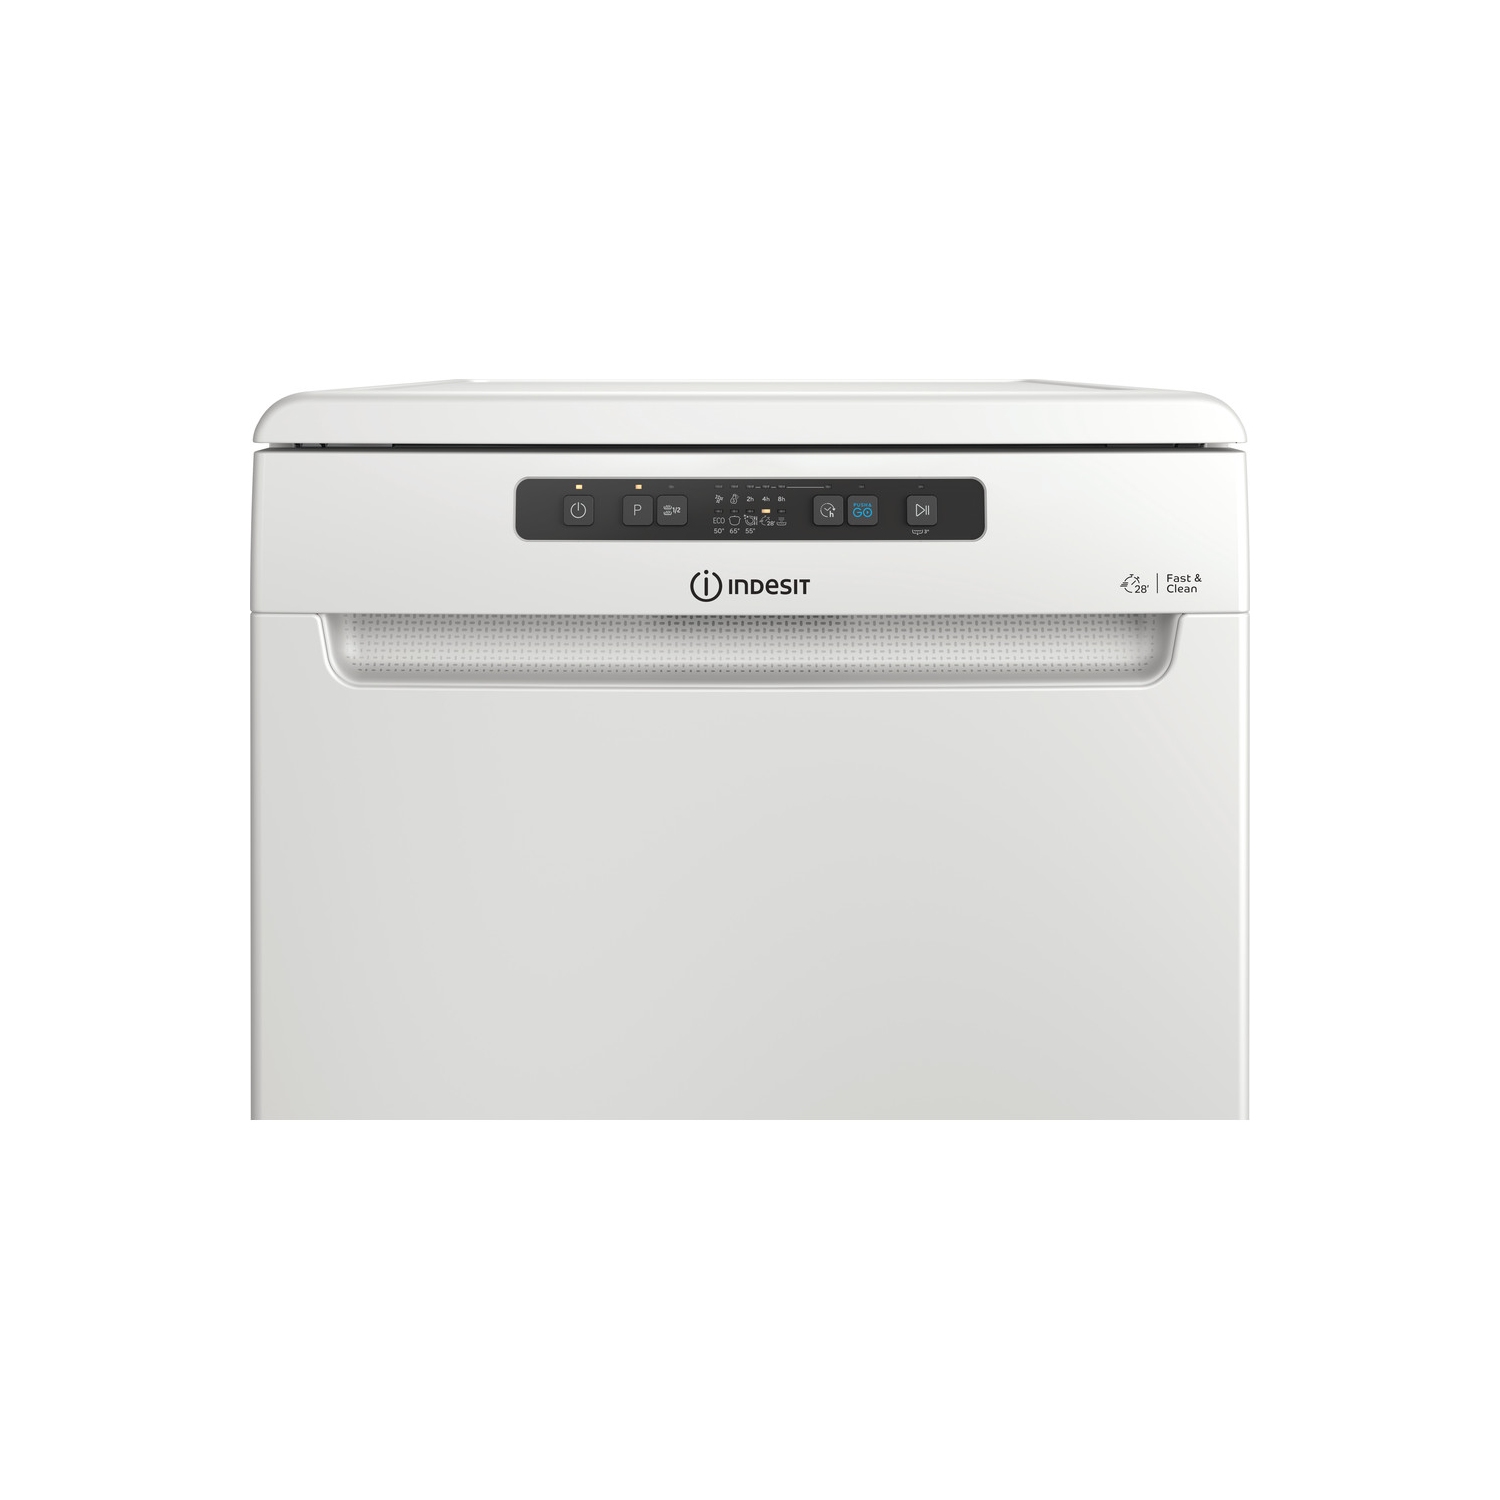 Indesit DFC2B16UK Full Size Dishwasher - White - 13 Place Settings - 2